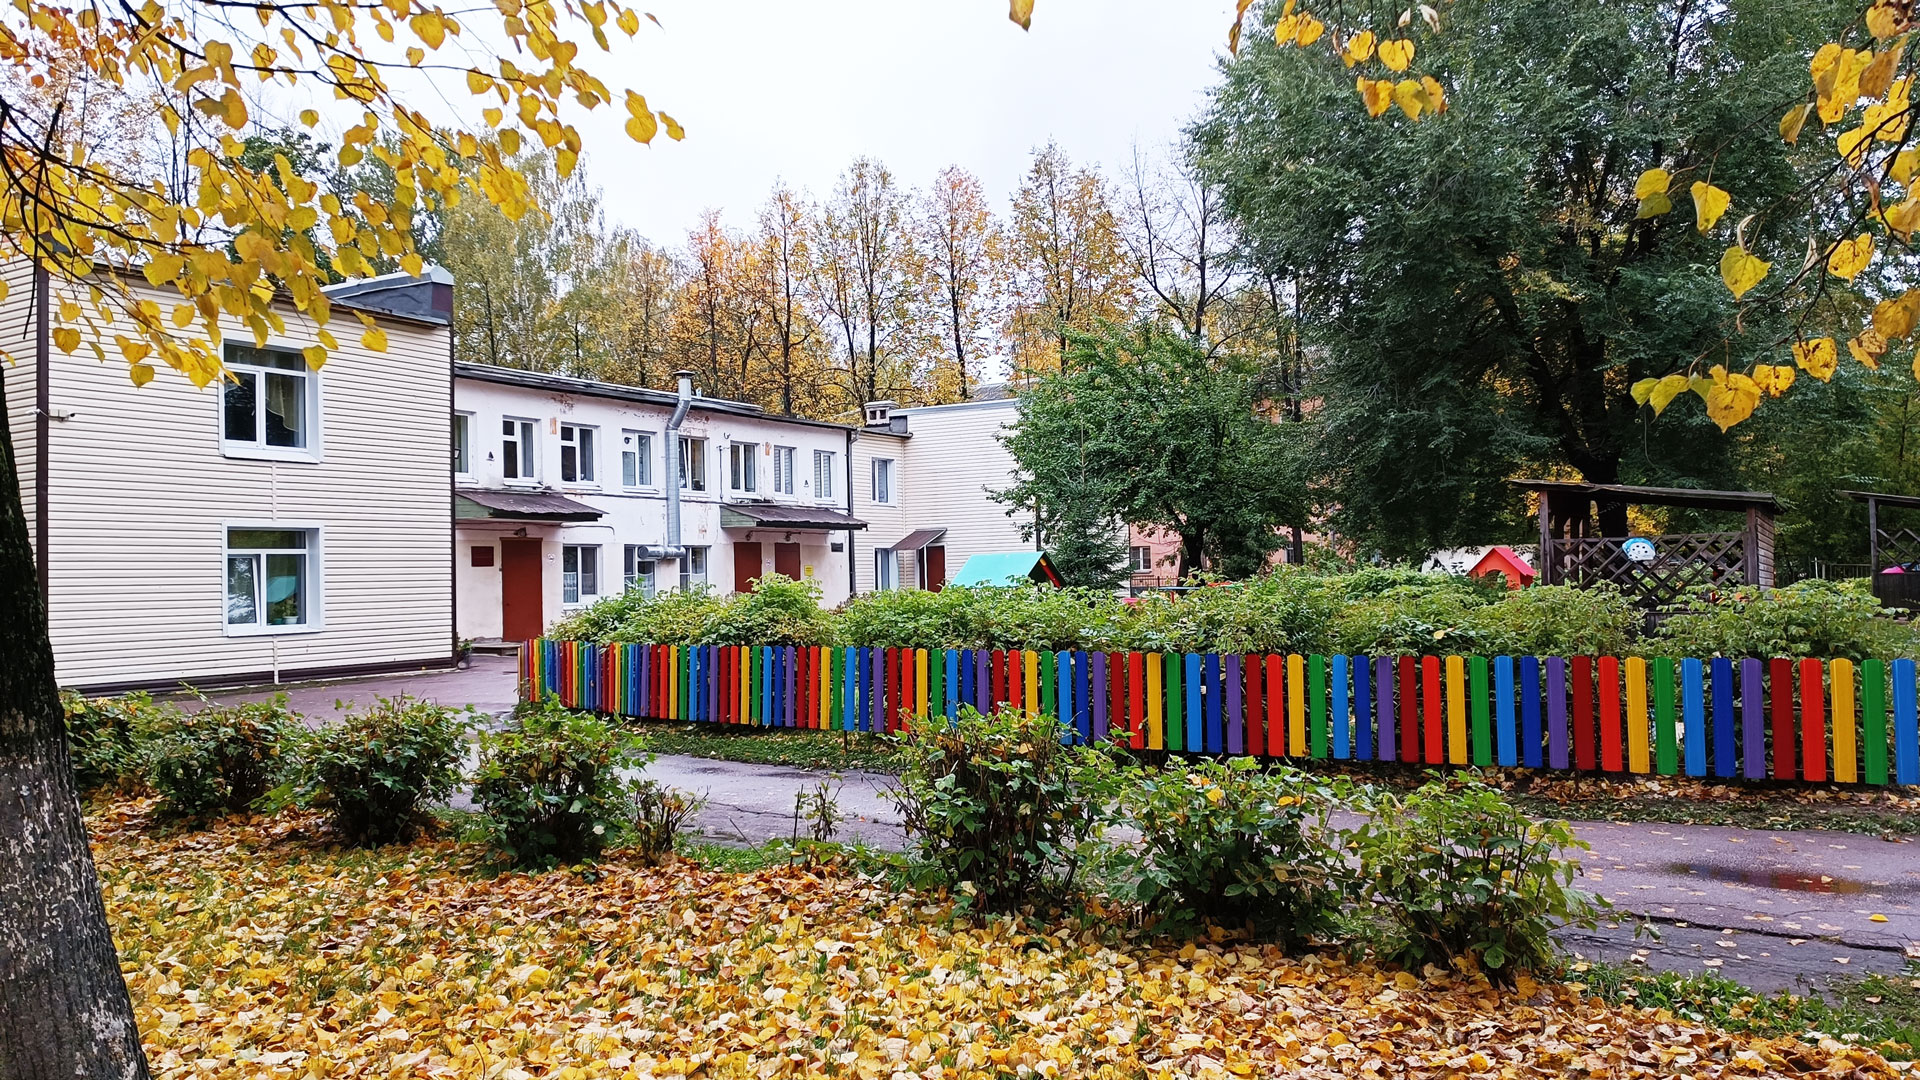 Детский сад 192 Ярославль: общий вид здания.